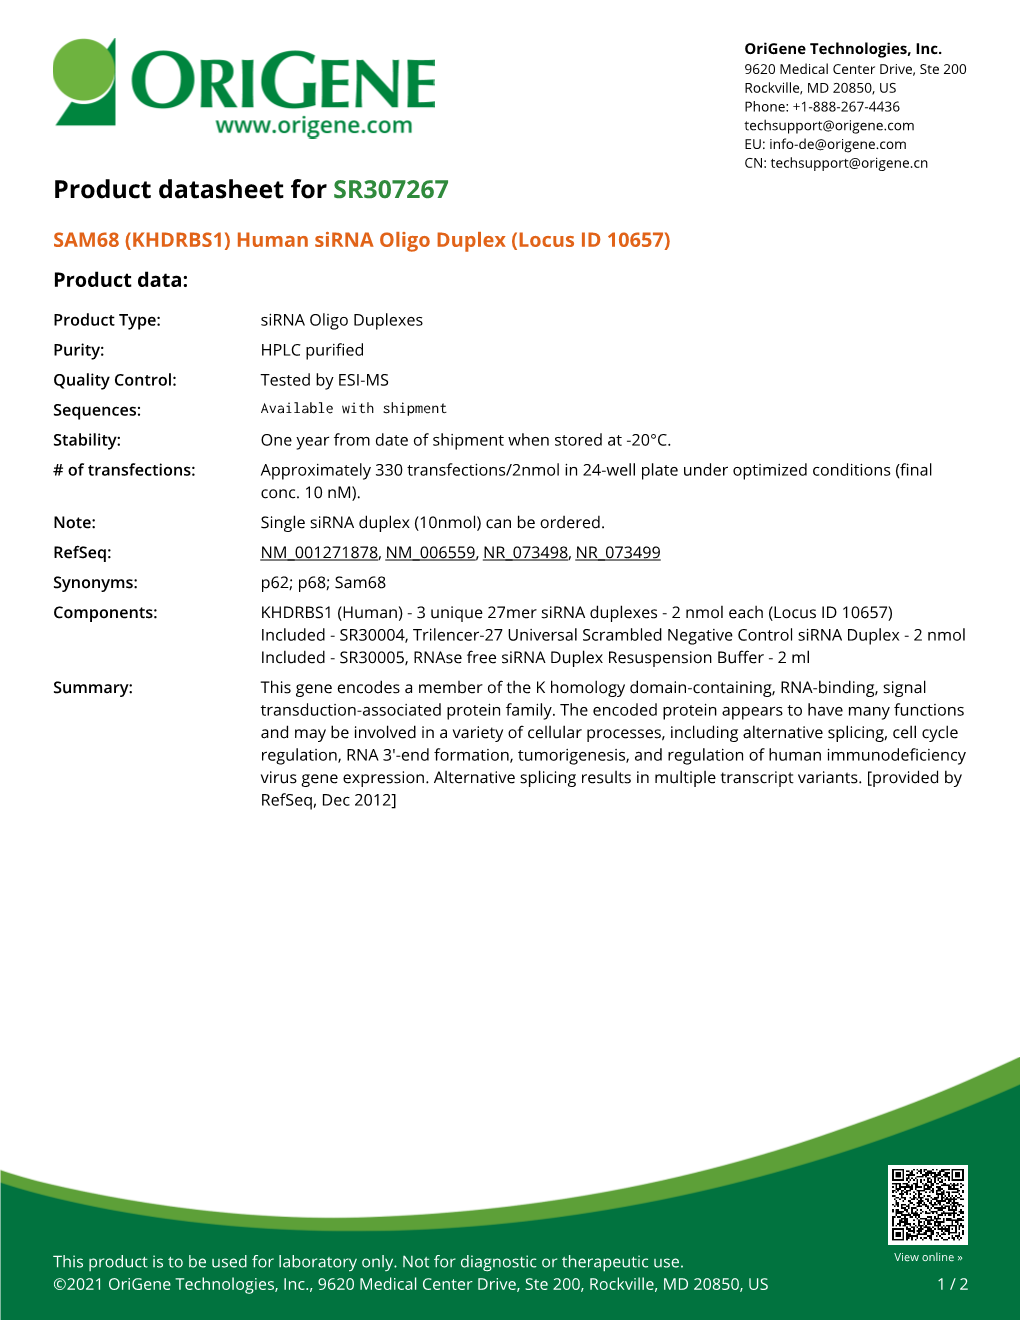 SAM68 (KHDRBS1) Human Sirna Oligo Duplex (Locus ID 10657) Product Data